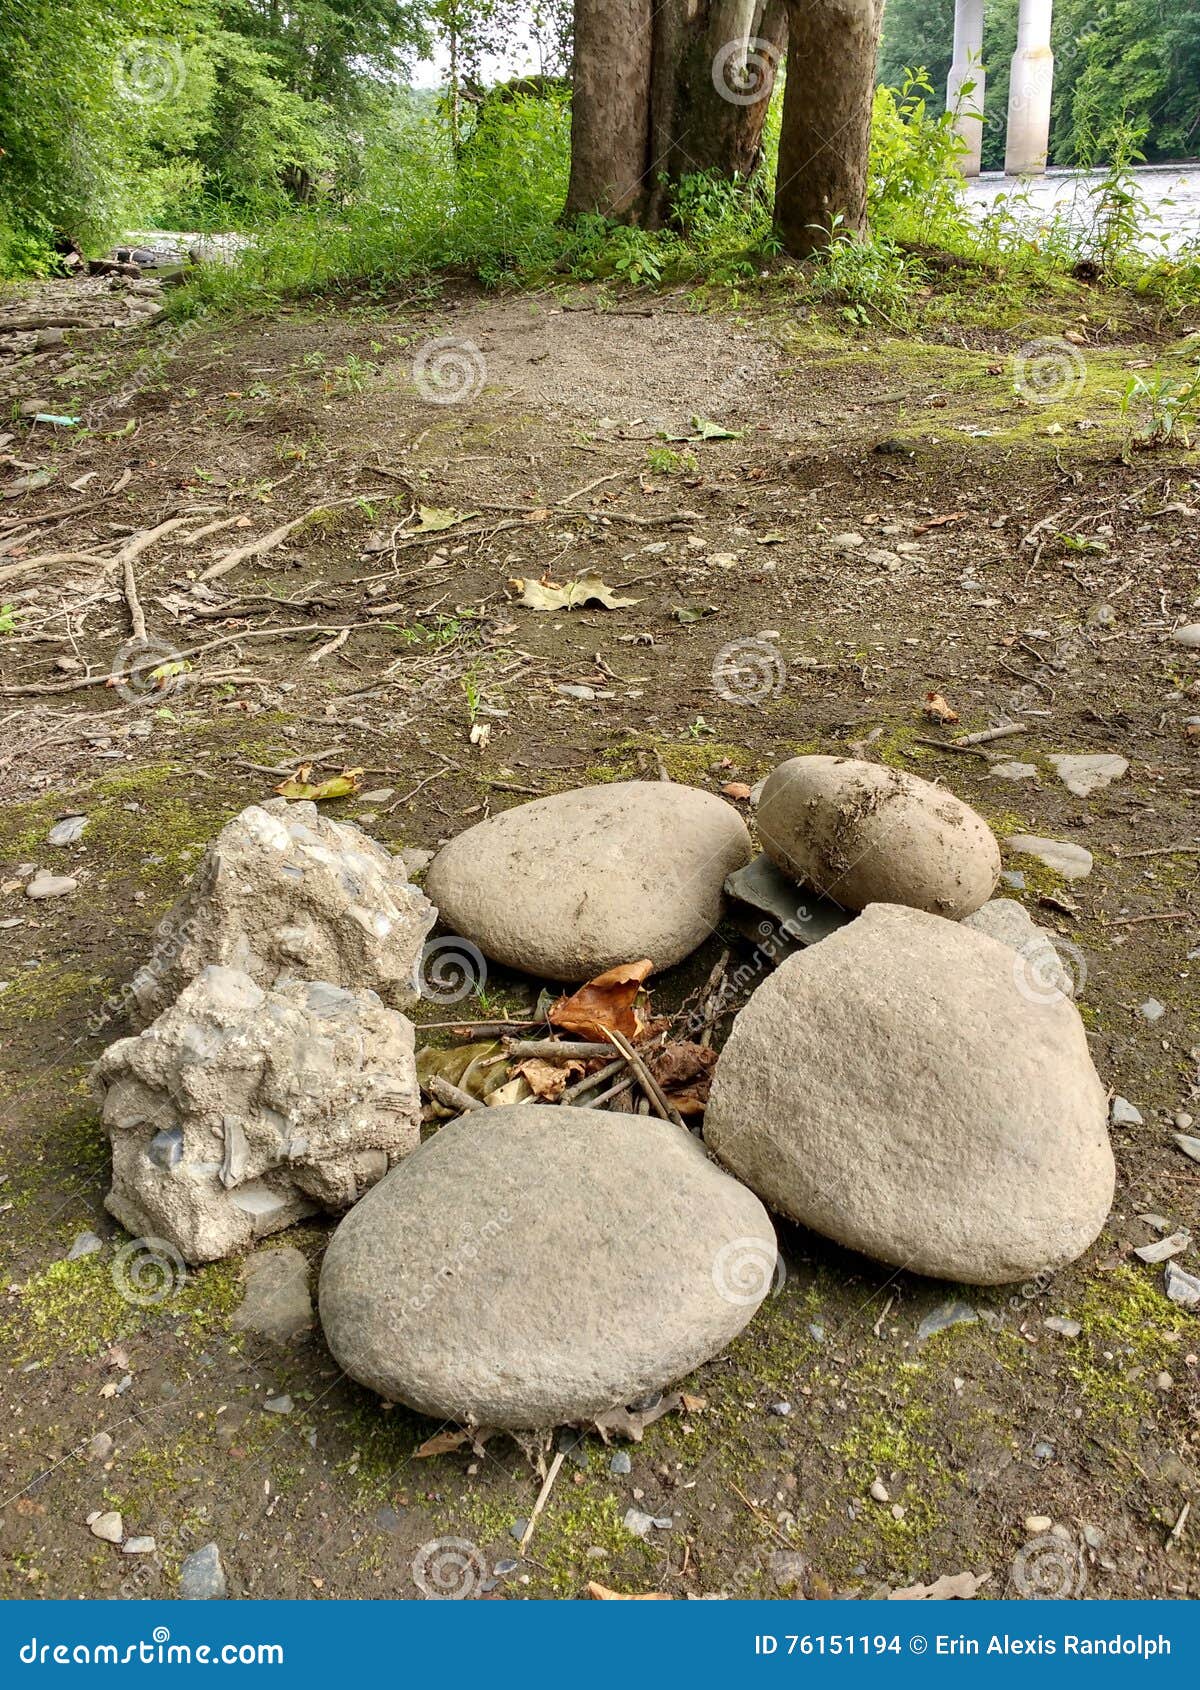 Felsen in einem Kreis, der für ein Lagerfeuer vorbereitet. Große Steine werden in einem festen Kreis vereinbart und werden zu einem Lagerfeuer fertig Dieser Campingplatz ist nahe dem Lehigh-Fluss in Pennsylvania, USA